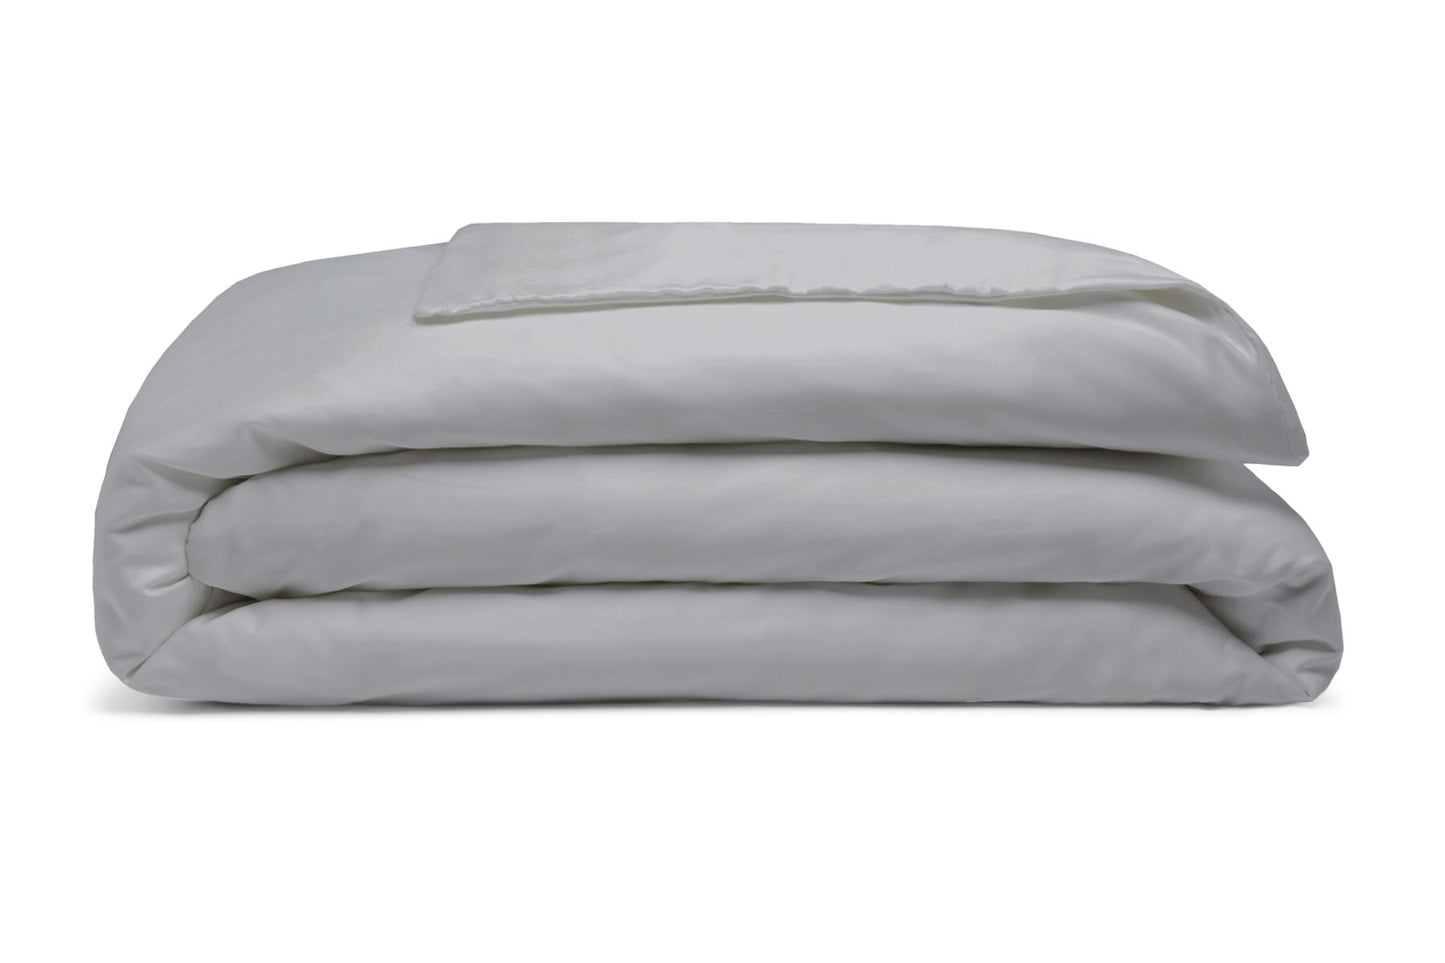 Paquete de ropa de cama con forma de isla doble de algodón egipcio 